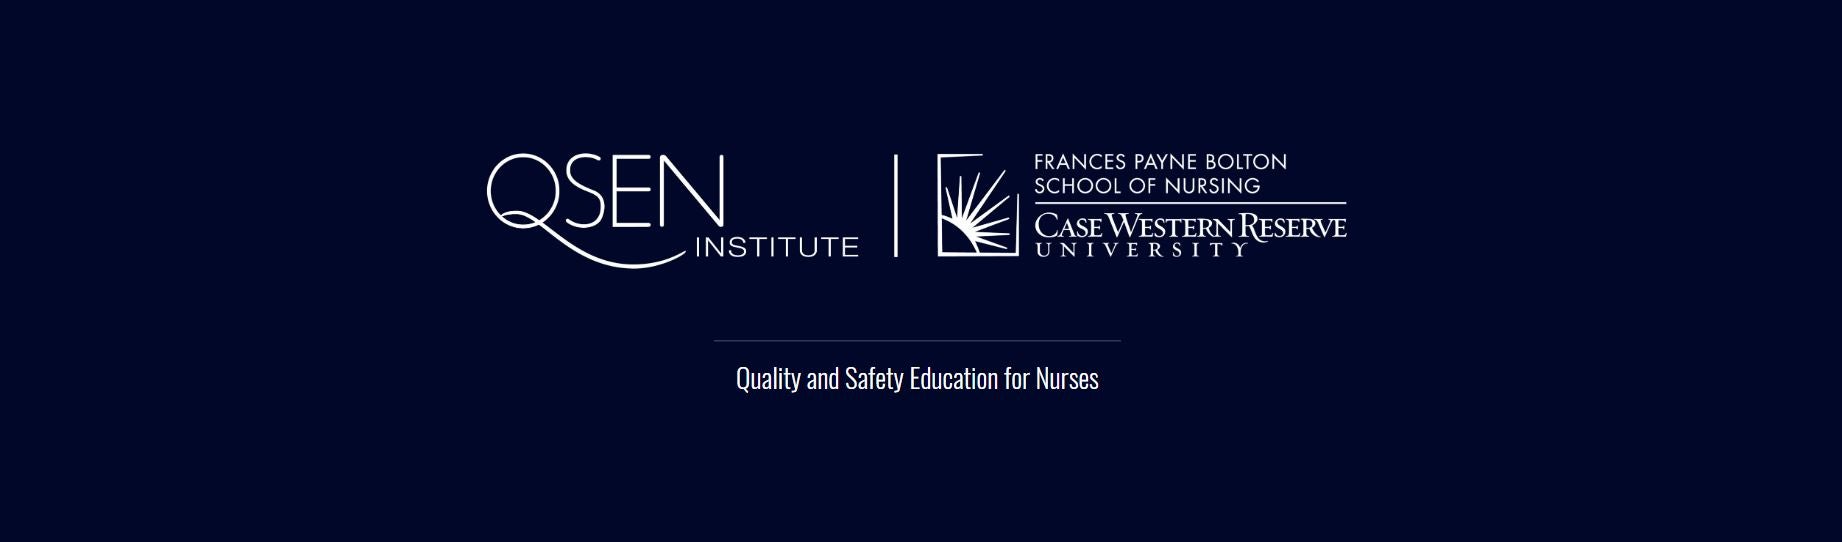 QSEN Institute at FPB Logo